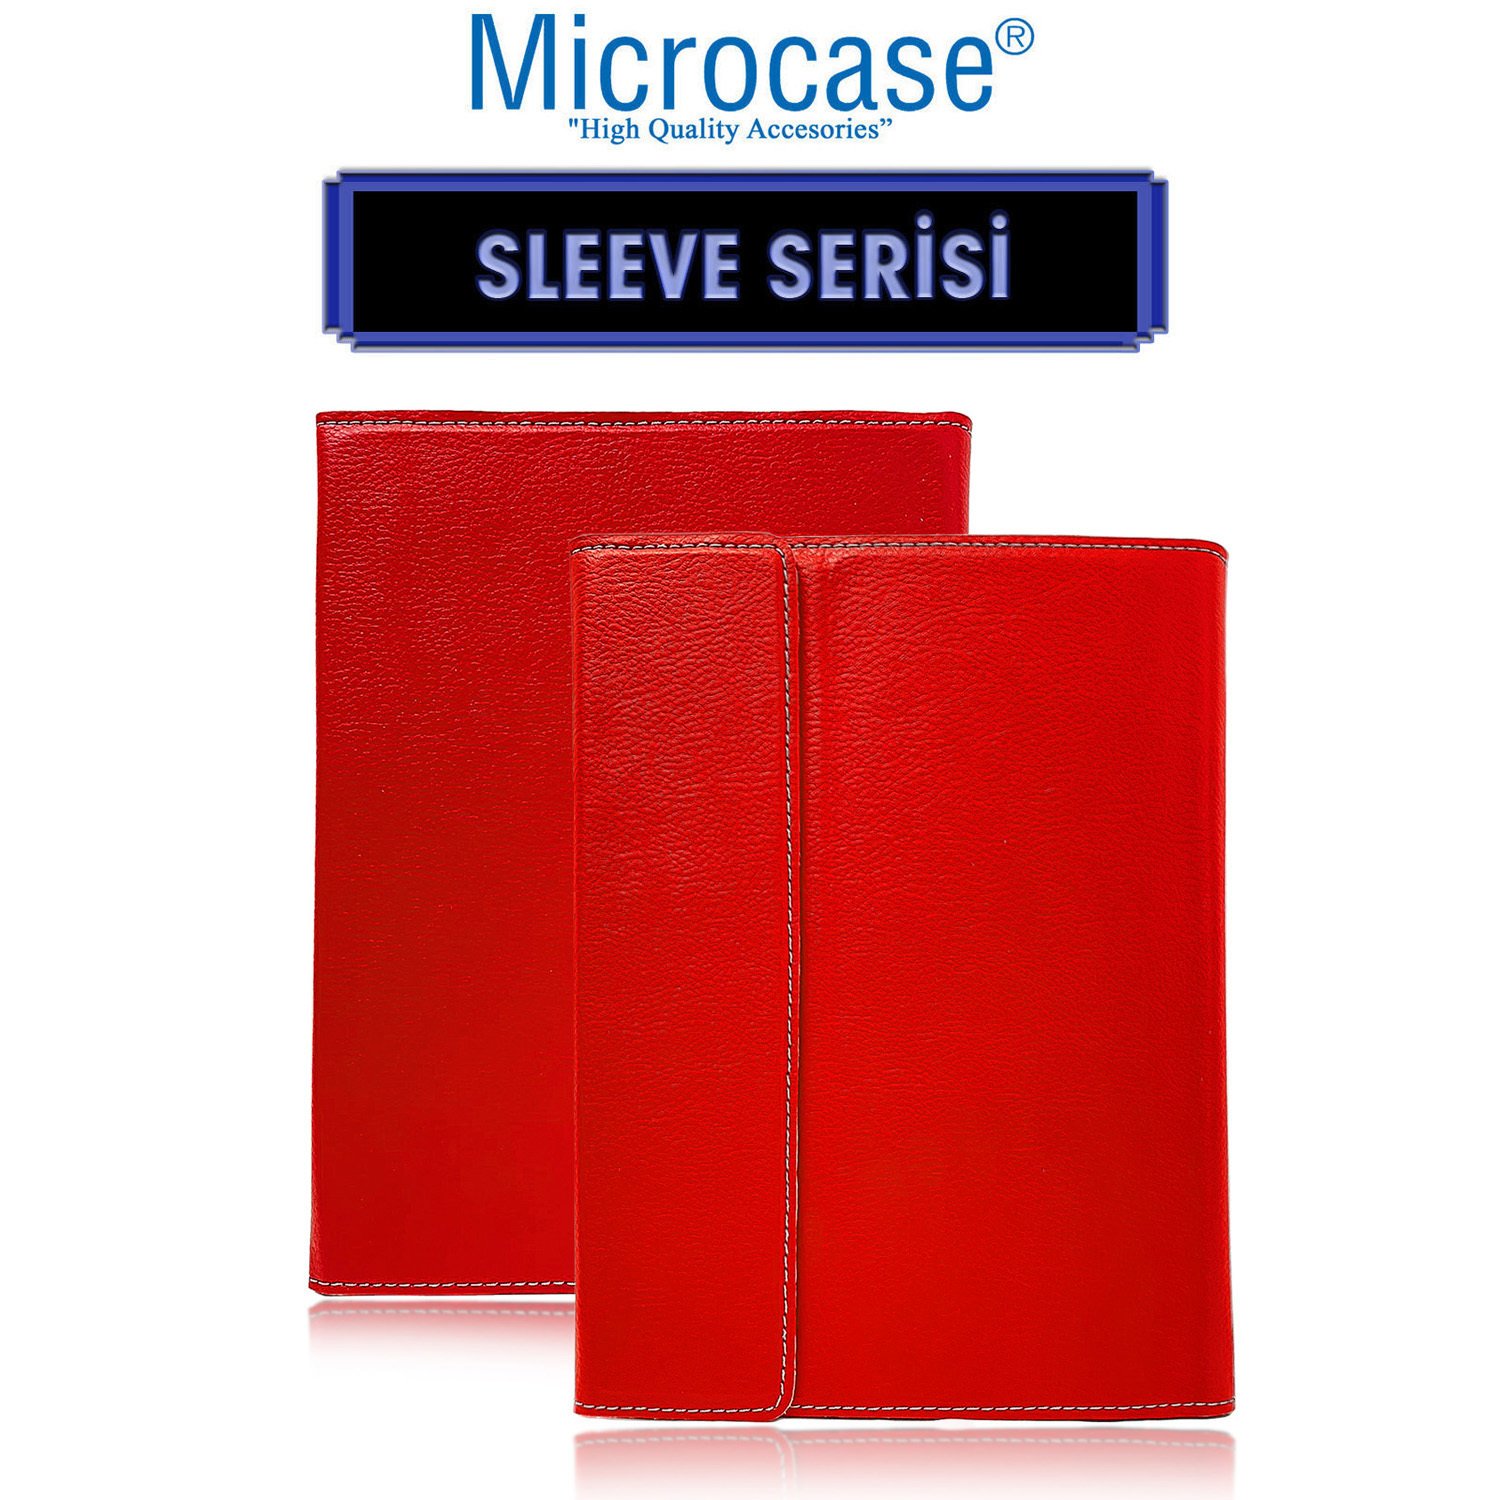 Microcase Huawei Matepad 11 2021 Sleeve Serisi Mıknatıs Kapaklı Standlı Kılıf - ACK101 Kırmızı